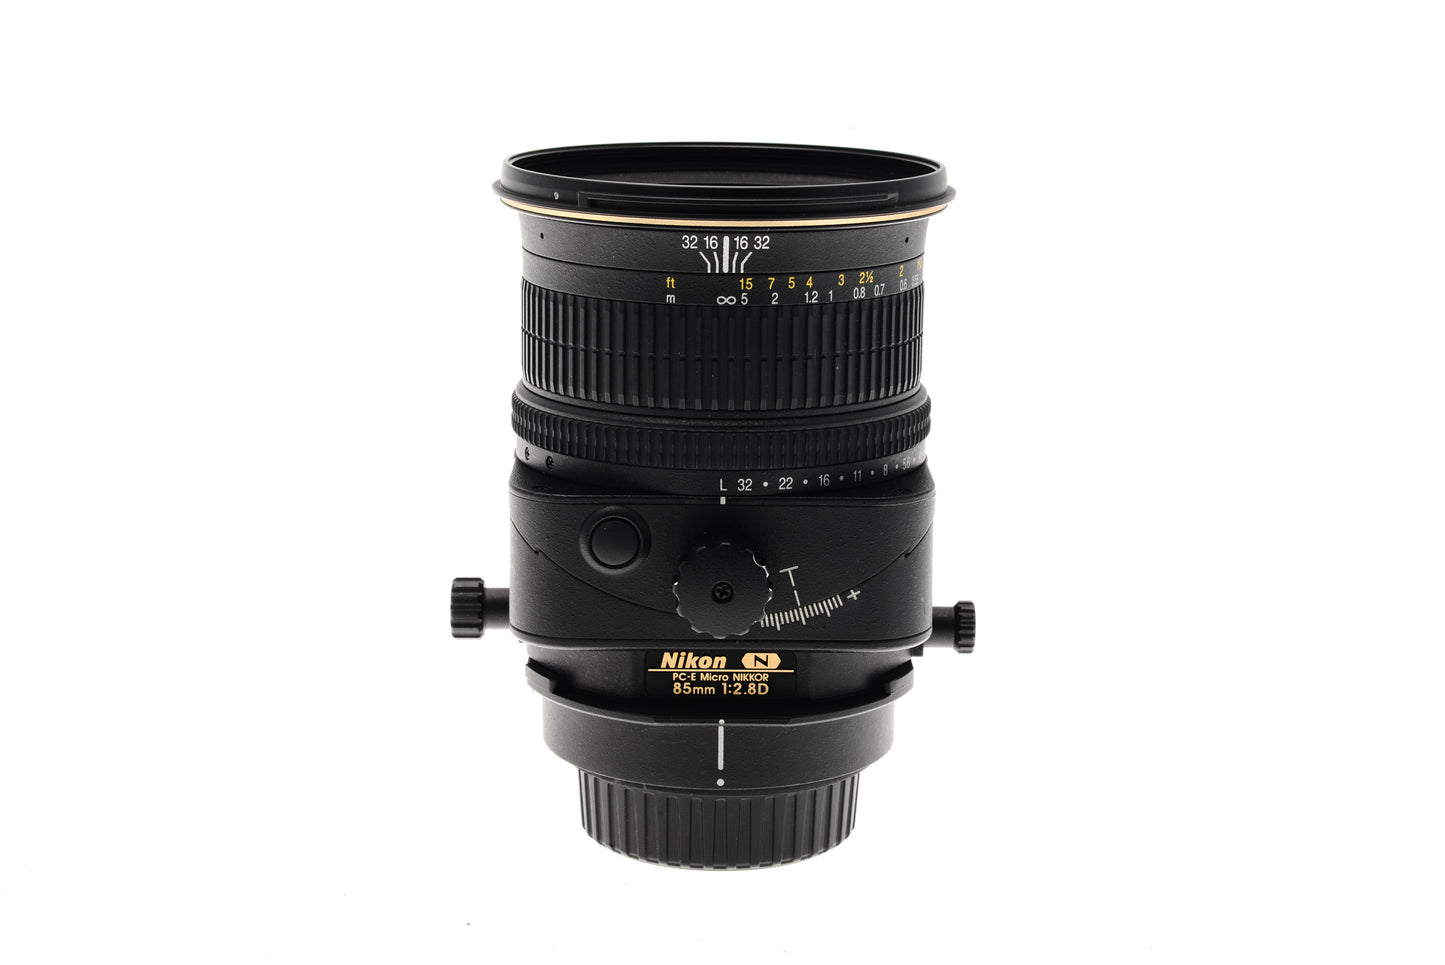 Nikon 85mm f2.8 D PC-E Micro Nikkor - Lens